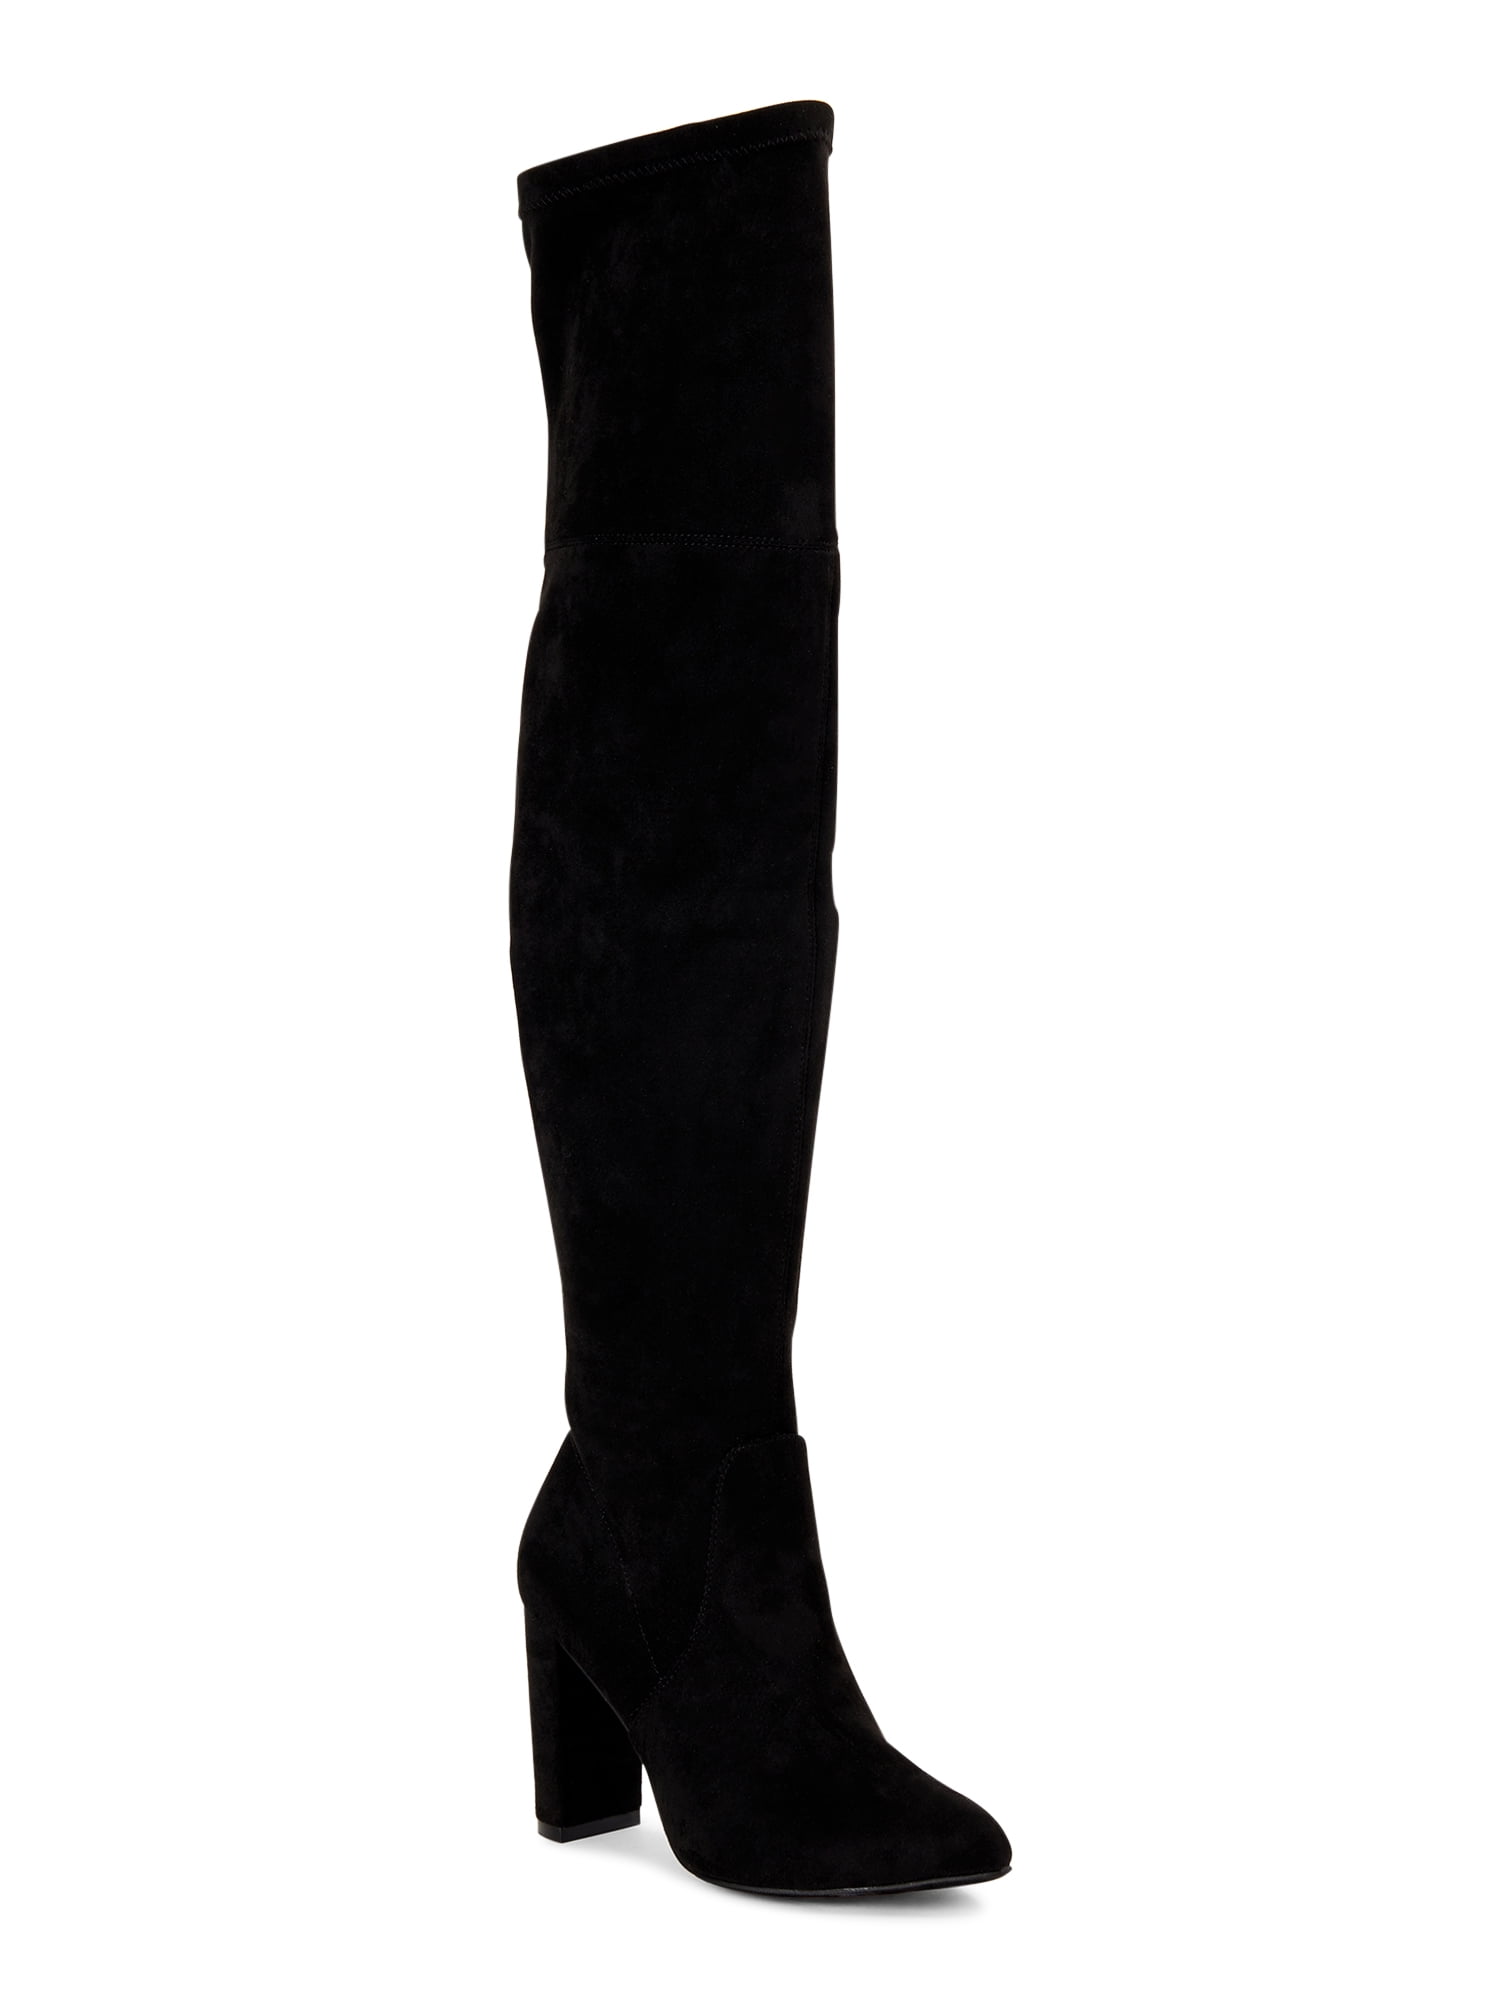 Scoop Alexandra Women’s Over the Knee Heeled Boots - Walmart.com